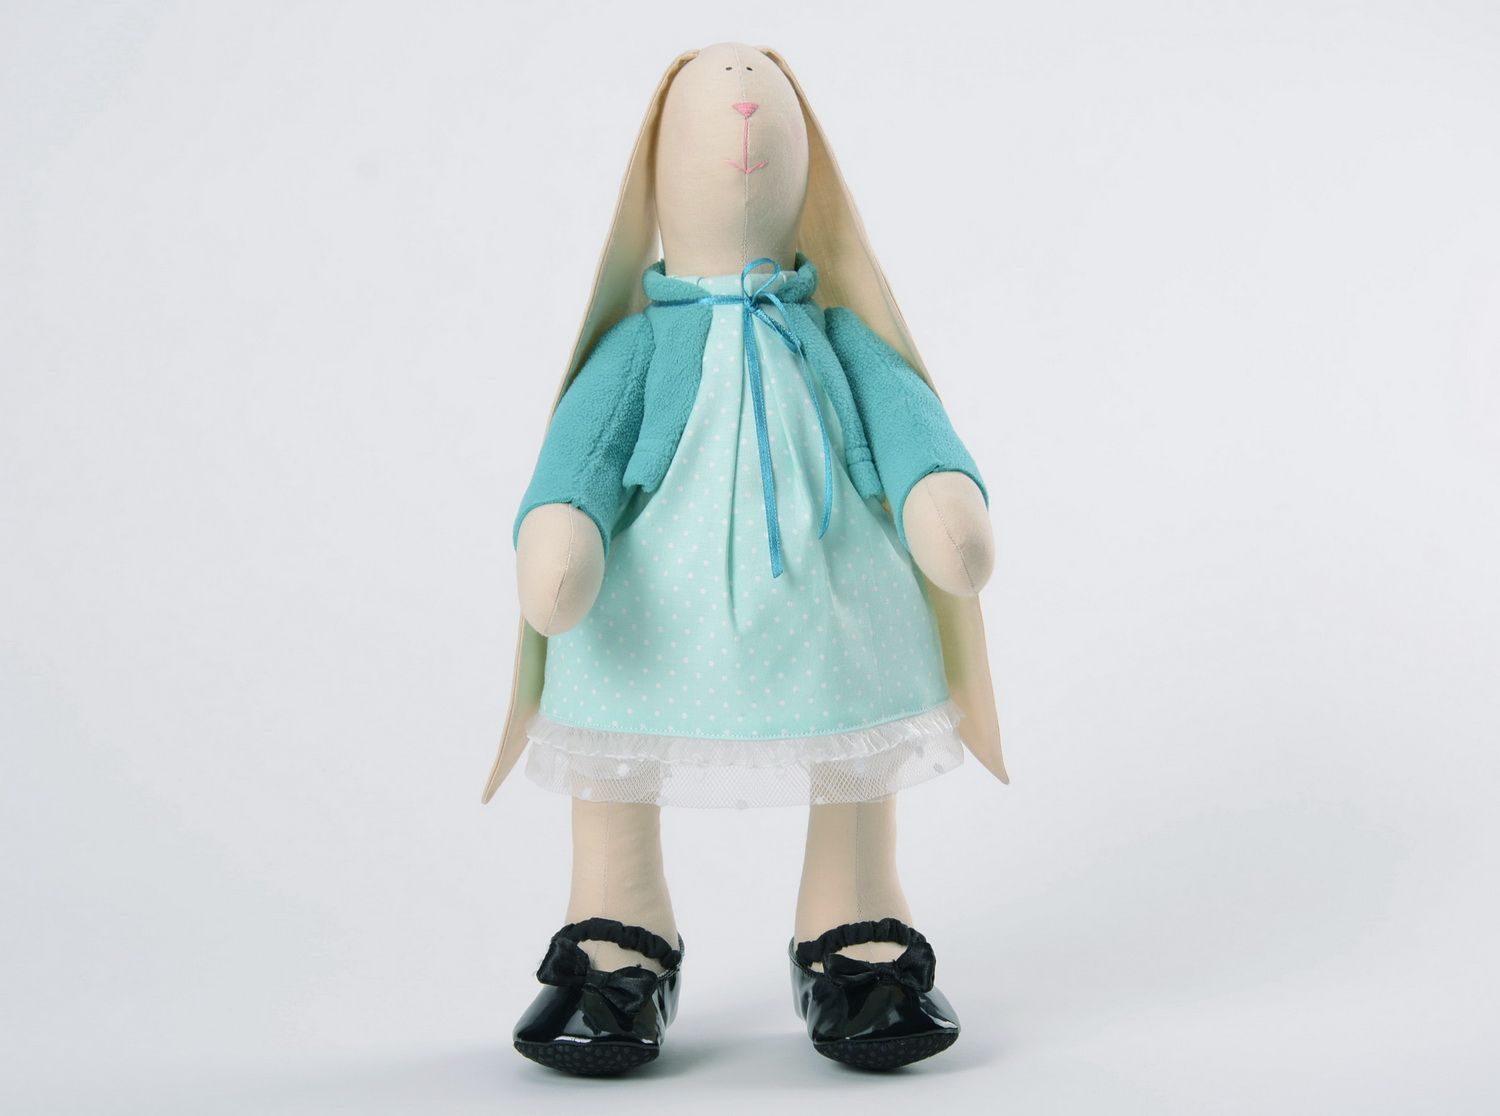 Puppe Häsin im Kleid foto 3